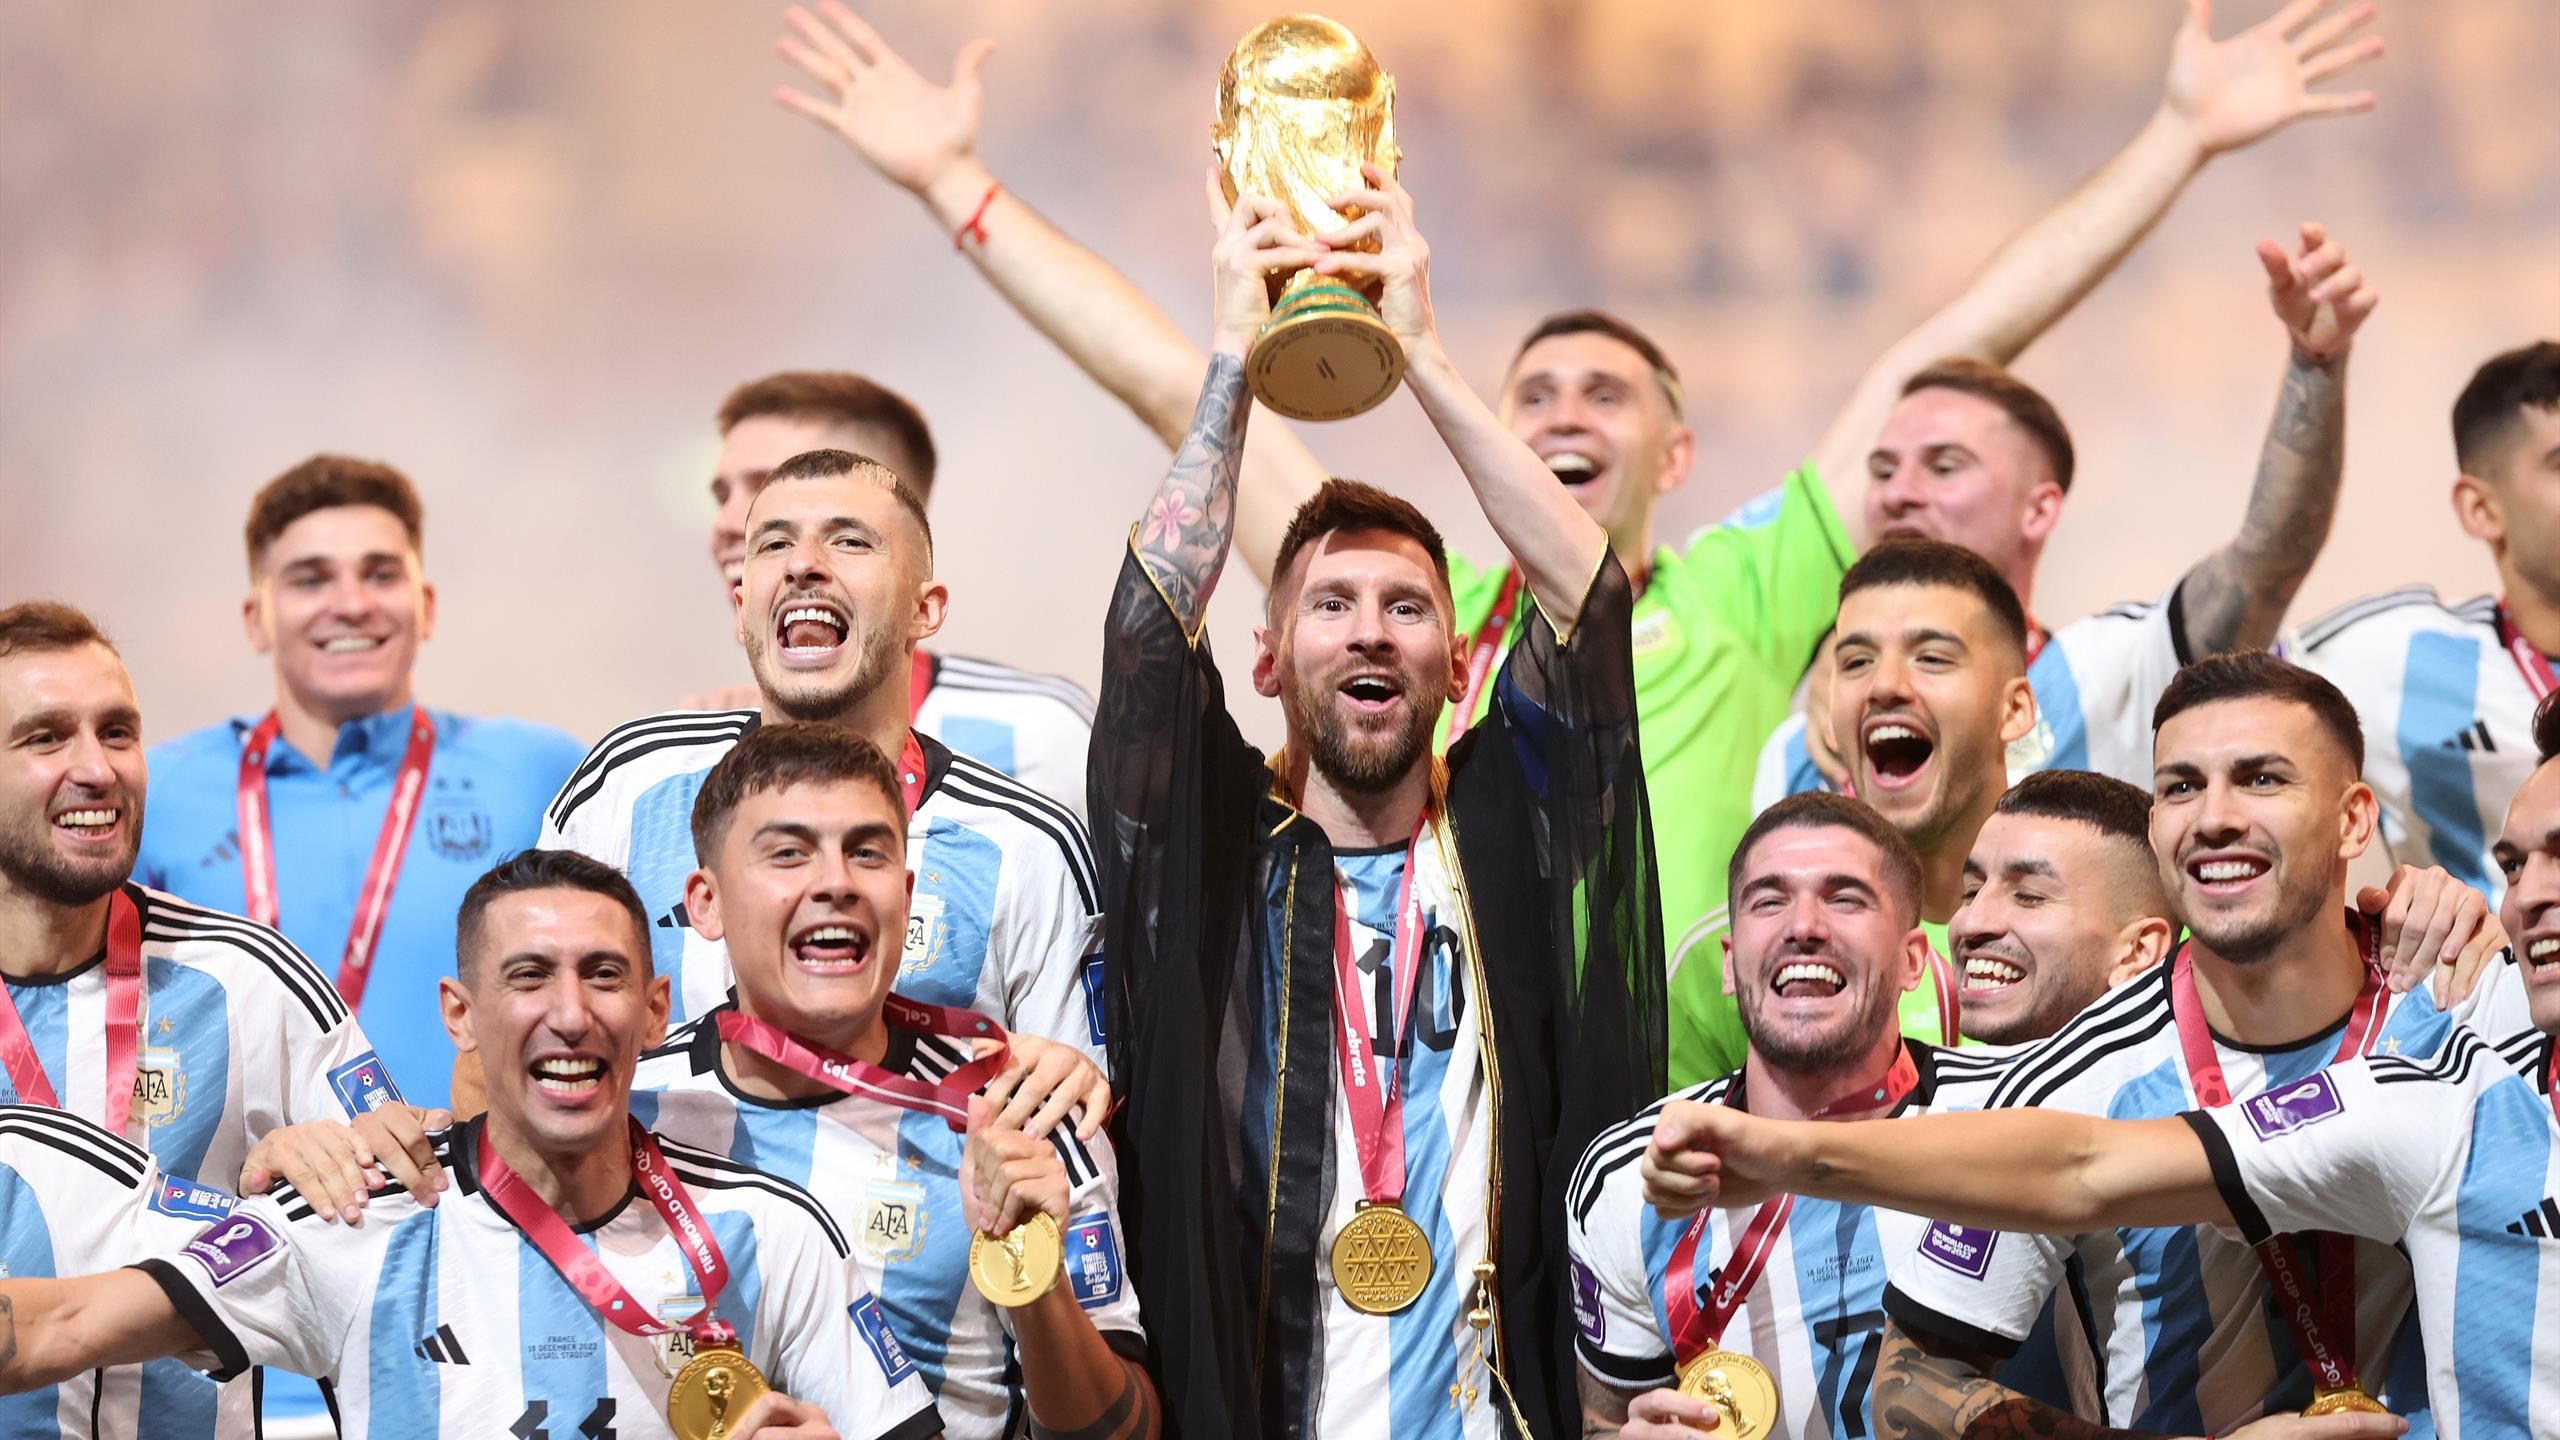 Quả bóng Vàng World Cup 2022 đang đến gần. Đội tuyển nào sẽ mặc áo vàng chiếm lĩnh vòng chung kết năm nay? Hãy cùng đón xem hình ảnh và video liên quan đến sự kiện này trên trang web của chúng tôi.